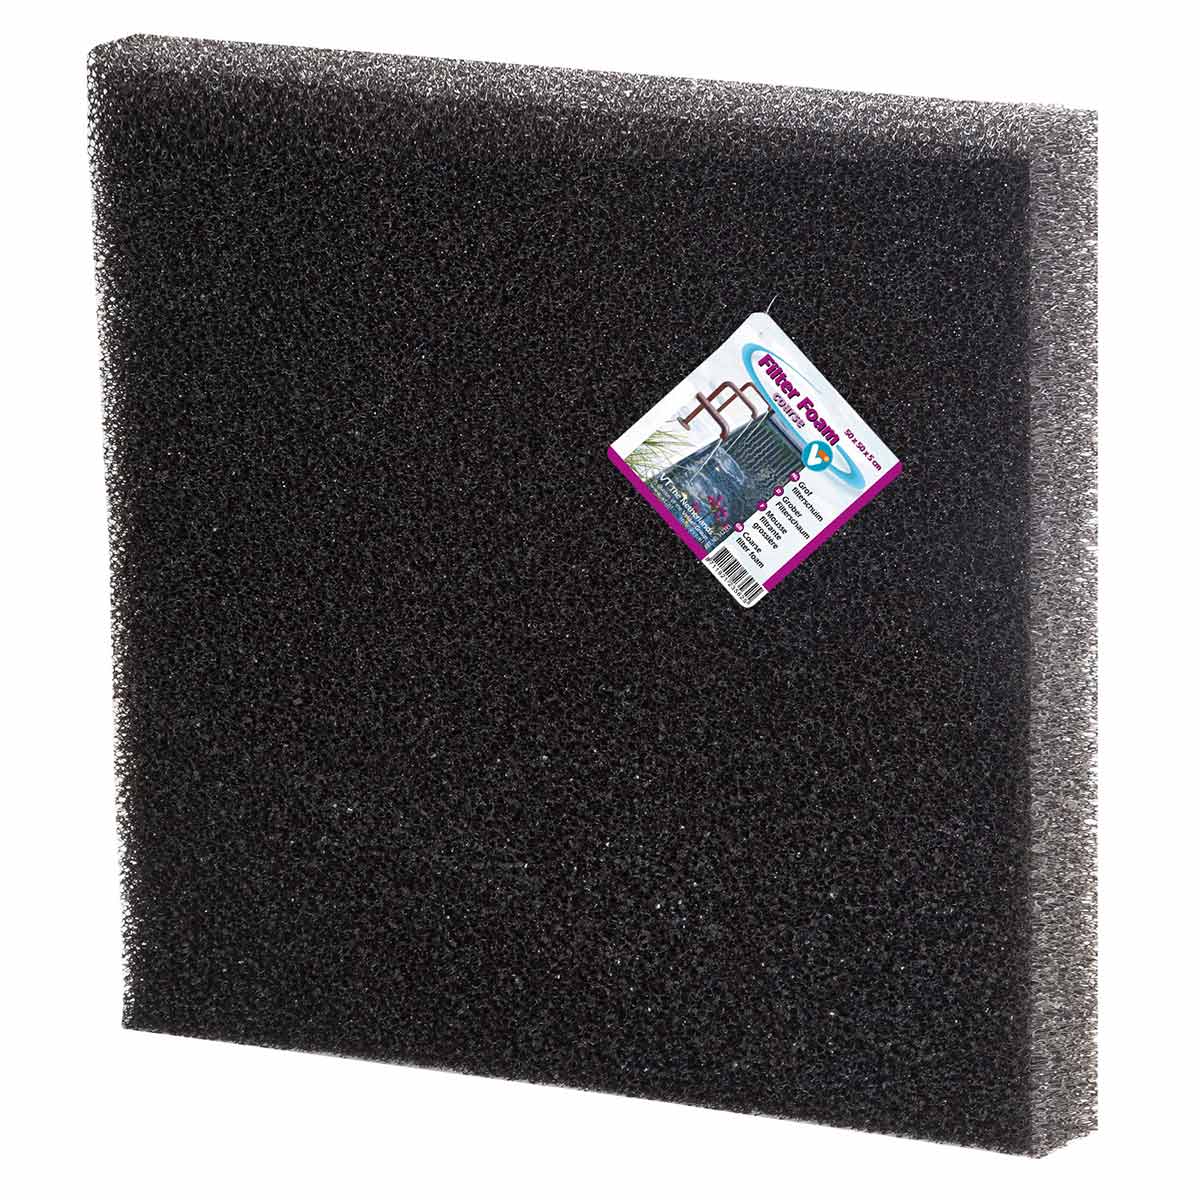 Velda VT Filter Foam black 50*50*5 cm